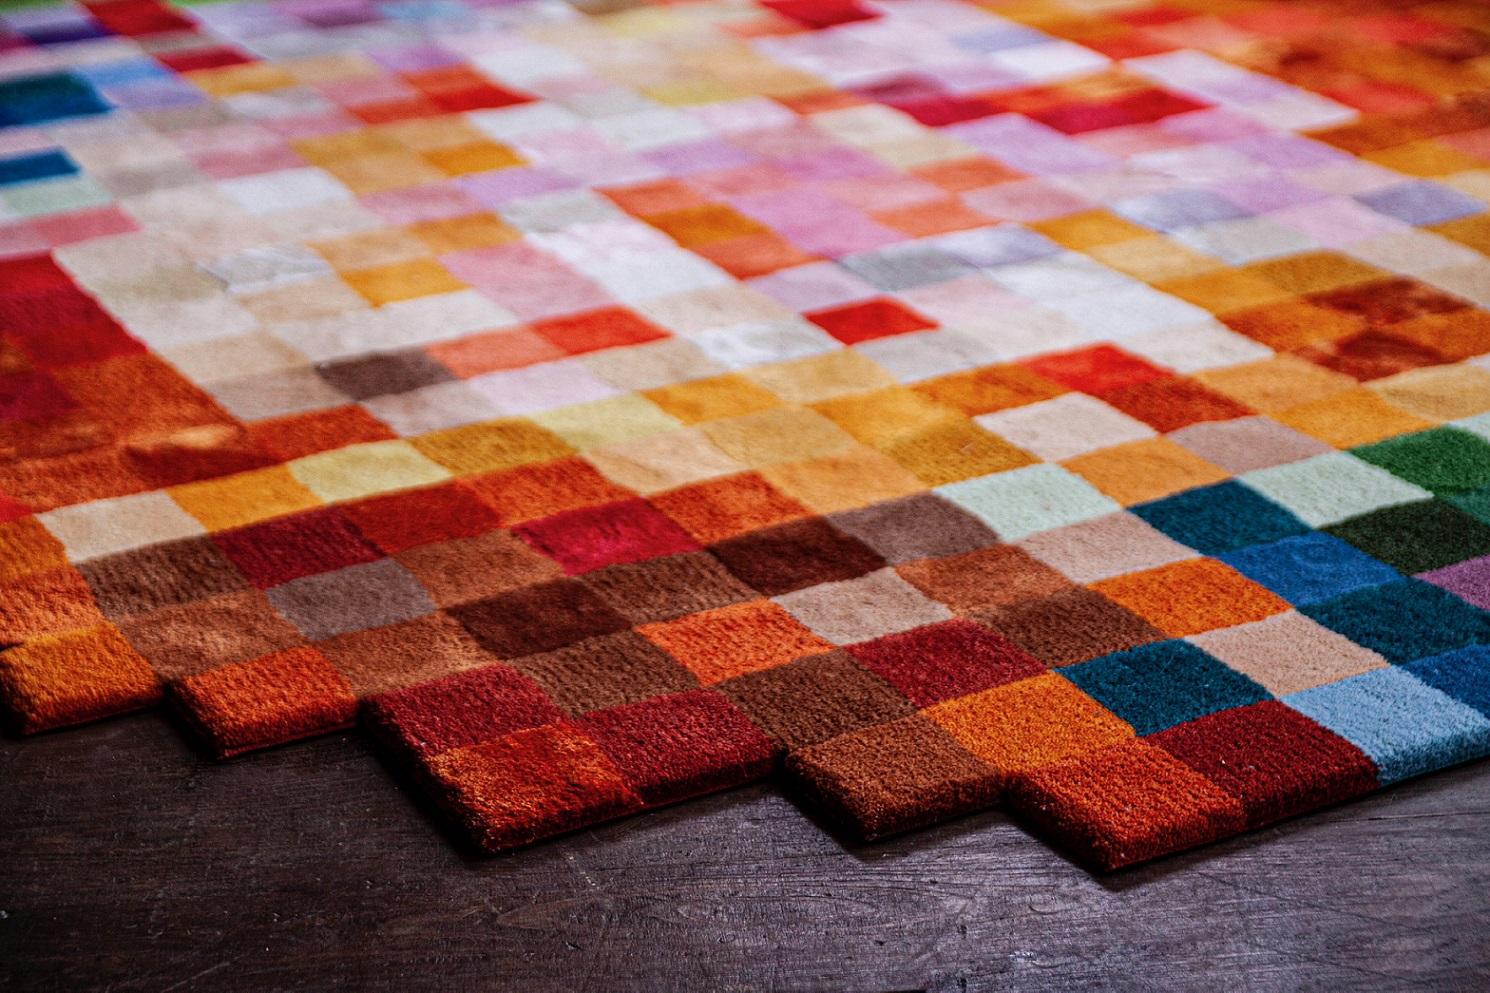 L'esthétique de la collection de tapis Islands est en phase avec la tendance contemporaine Urban Ethno.
Les couleurs et les lignes semblent irradier l'énergie éternelle de la terre, de l'eau, du ciel, du soleil... Grâce à la technique du tufting